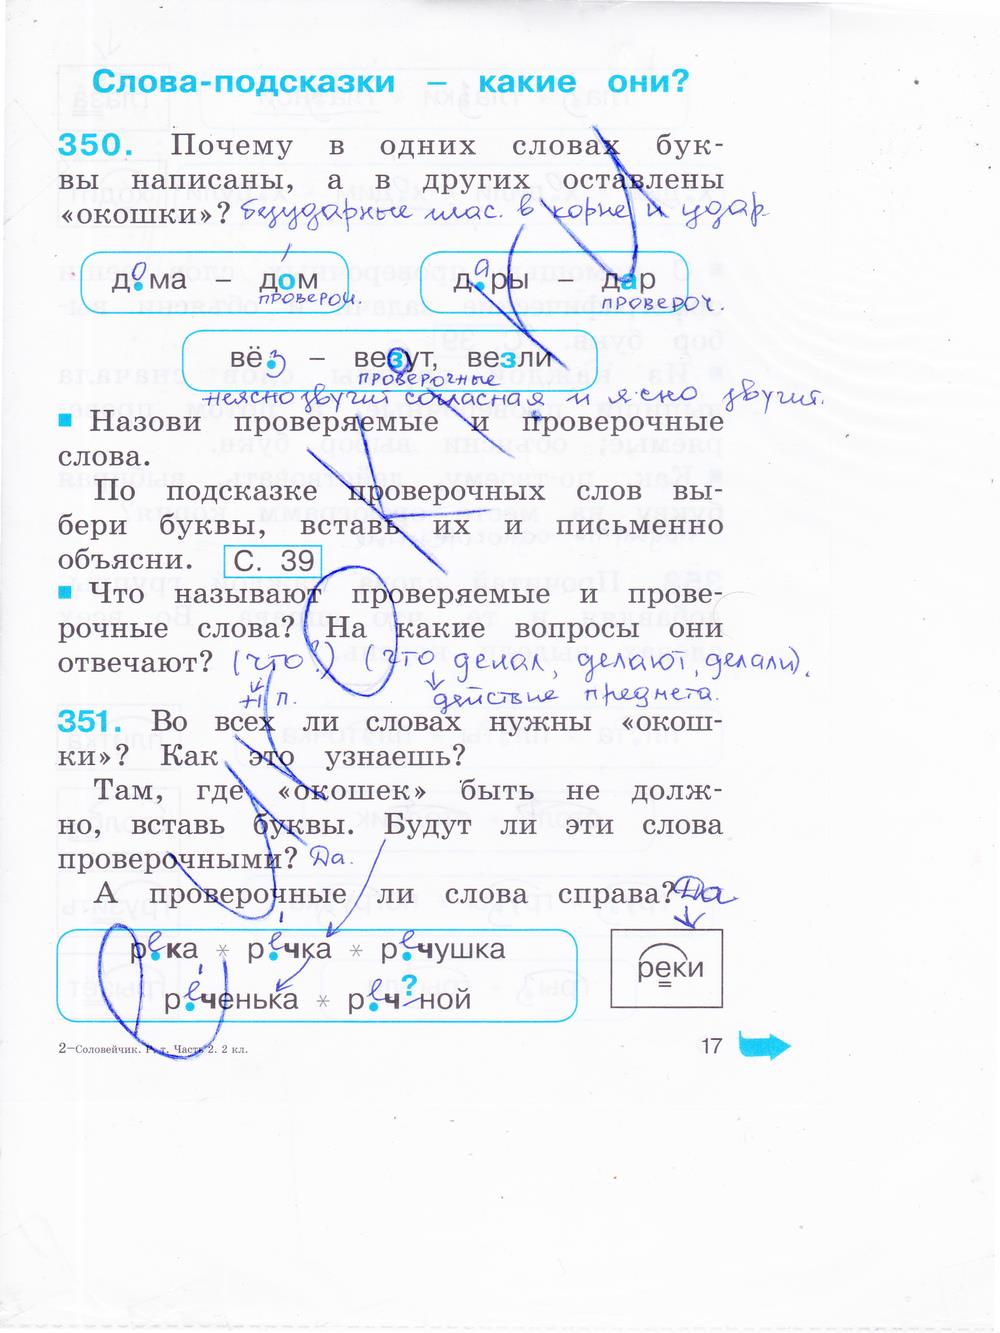 гдз 2 класс рабочая тетрадь часть 2 страница 17 русский язык Соловейчик, Кузьменко